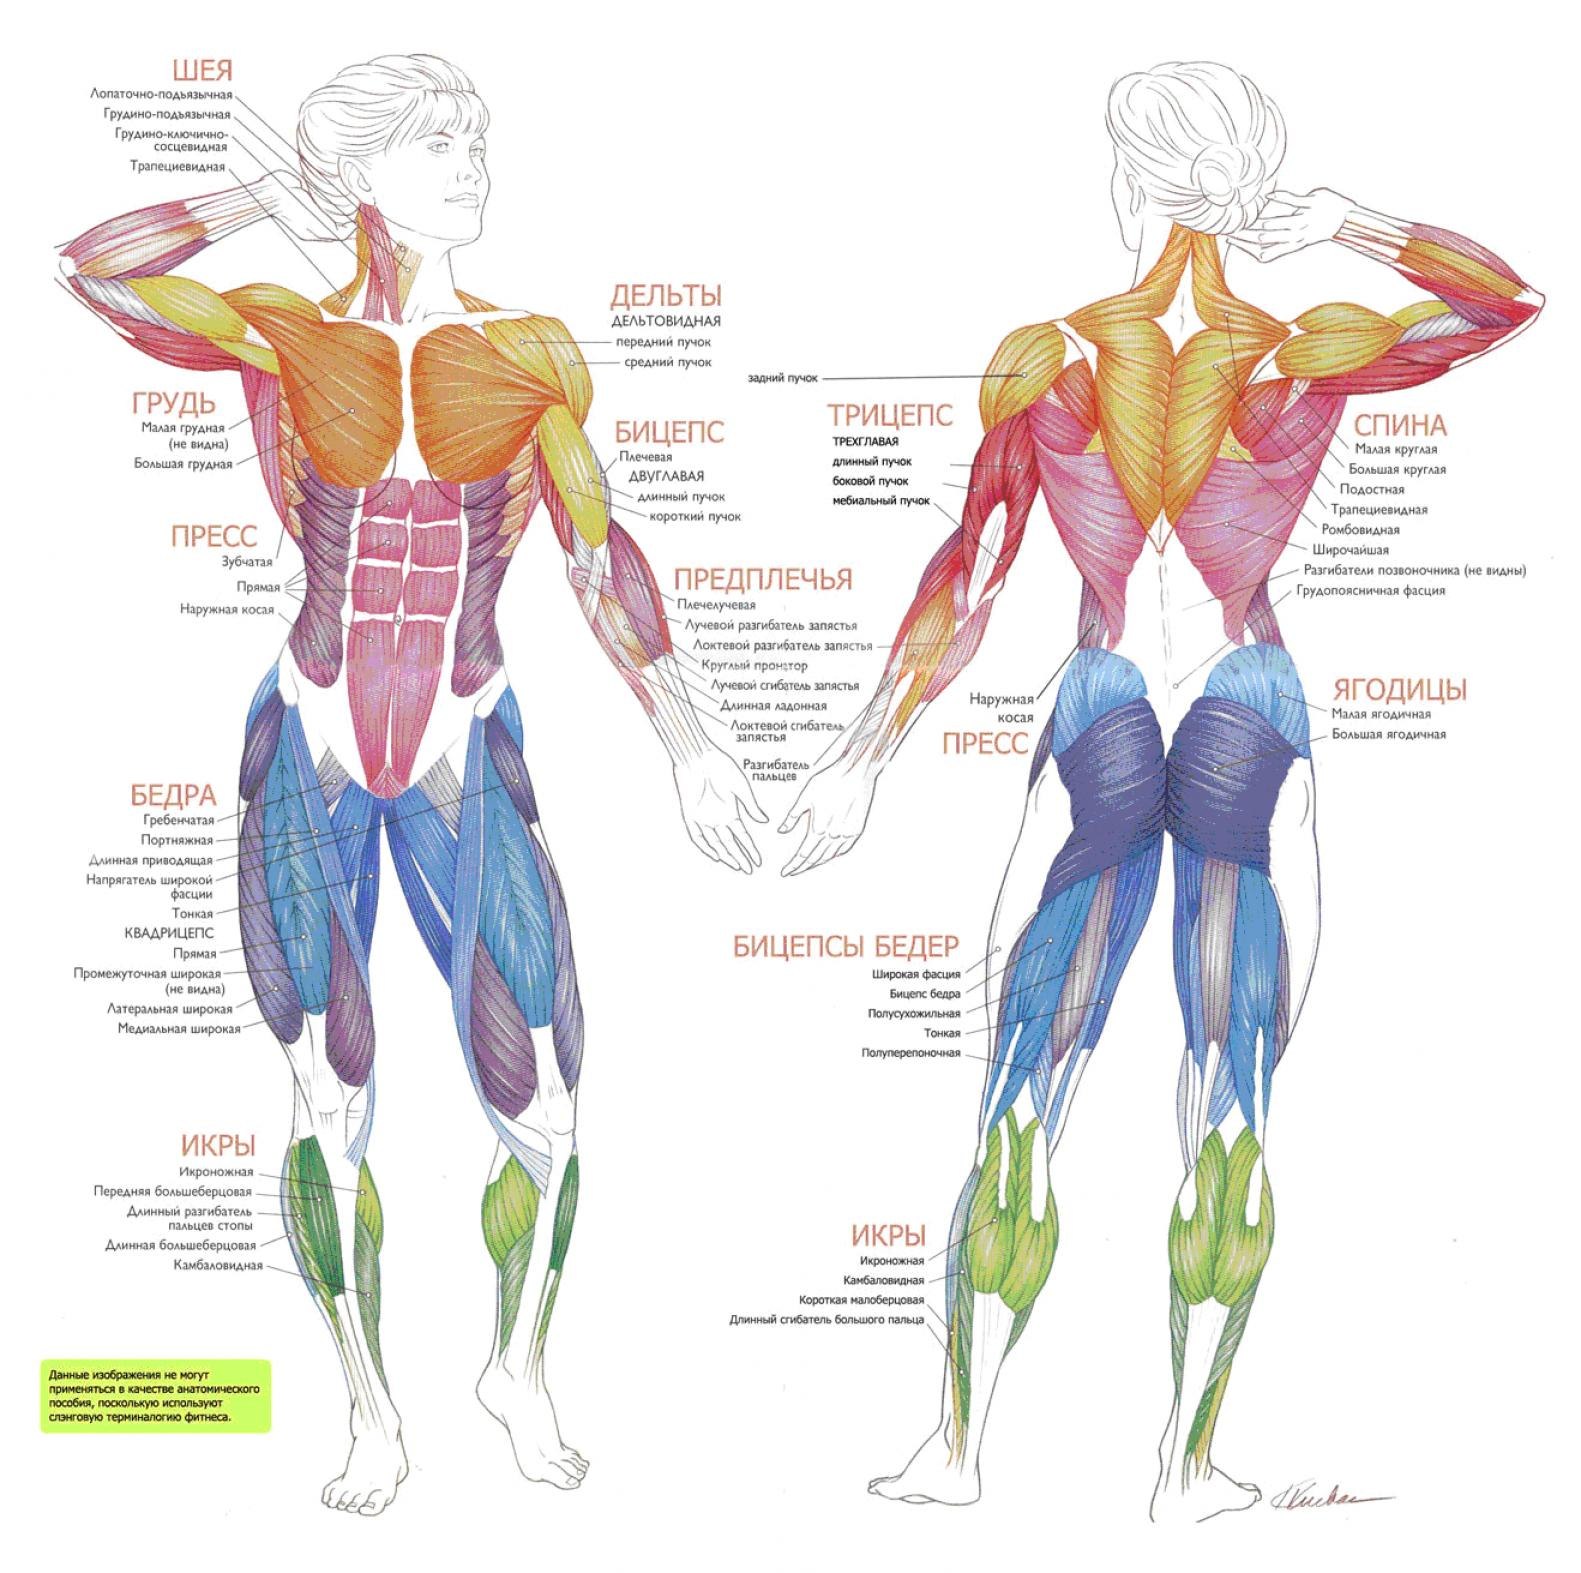 Всего в теле человека насчитывается около 600 мышц.